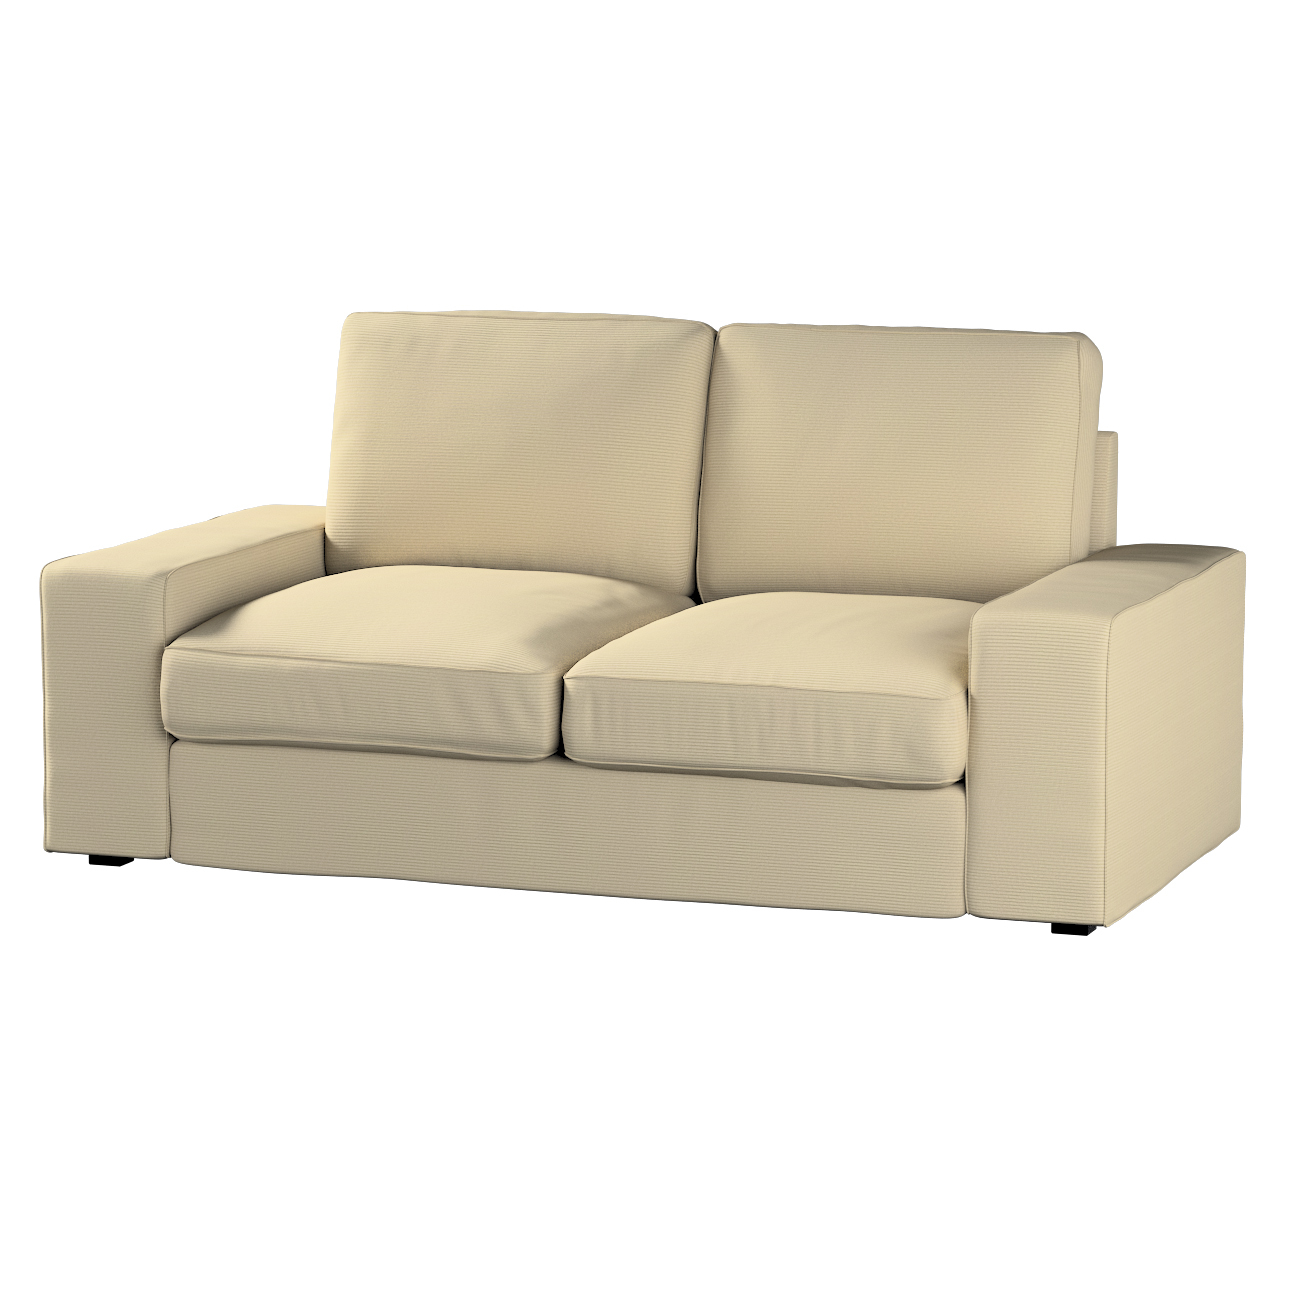 Bezug für Kivik 2-Sitzer Sofa, beige, Bezug für Sofa Kivik 2-Sitzer, Manche günstig online kaufen